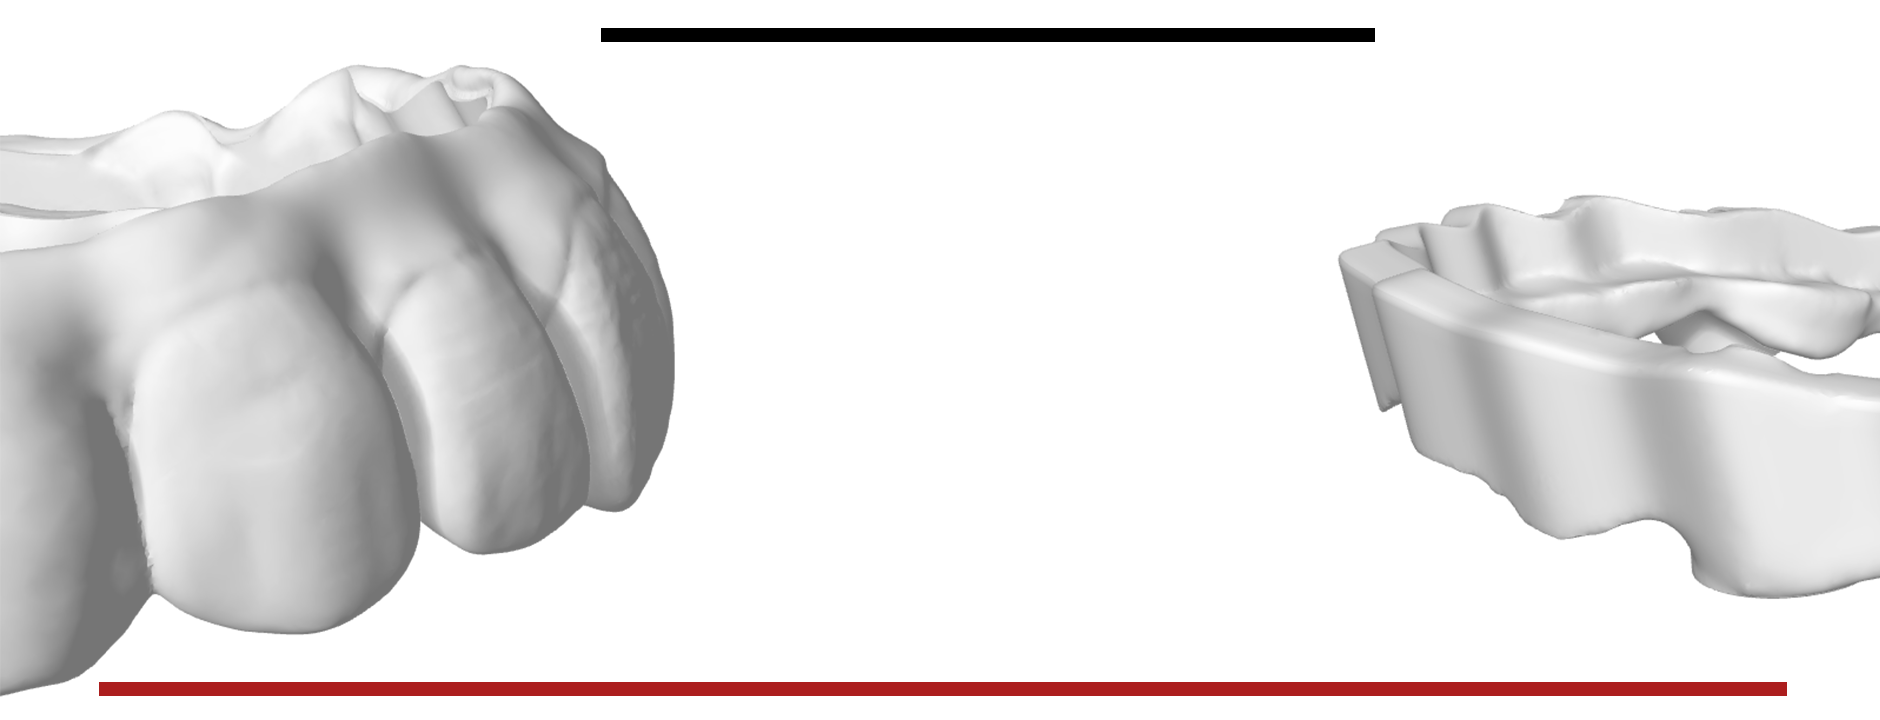 Zirconia Digital Dental CAD-CAM EXOCAD MILLBOx HYPERDENT 3Shape